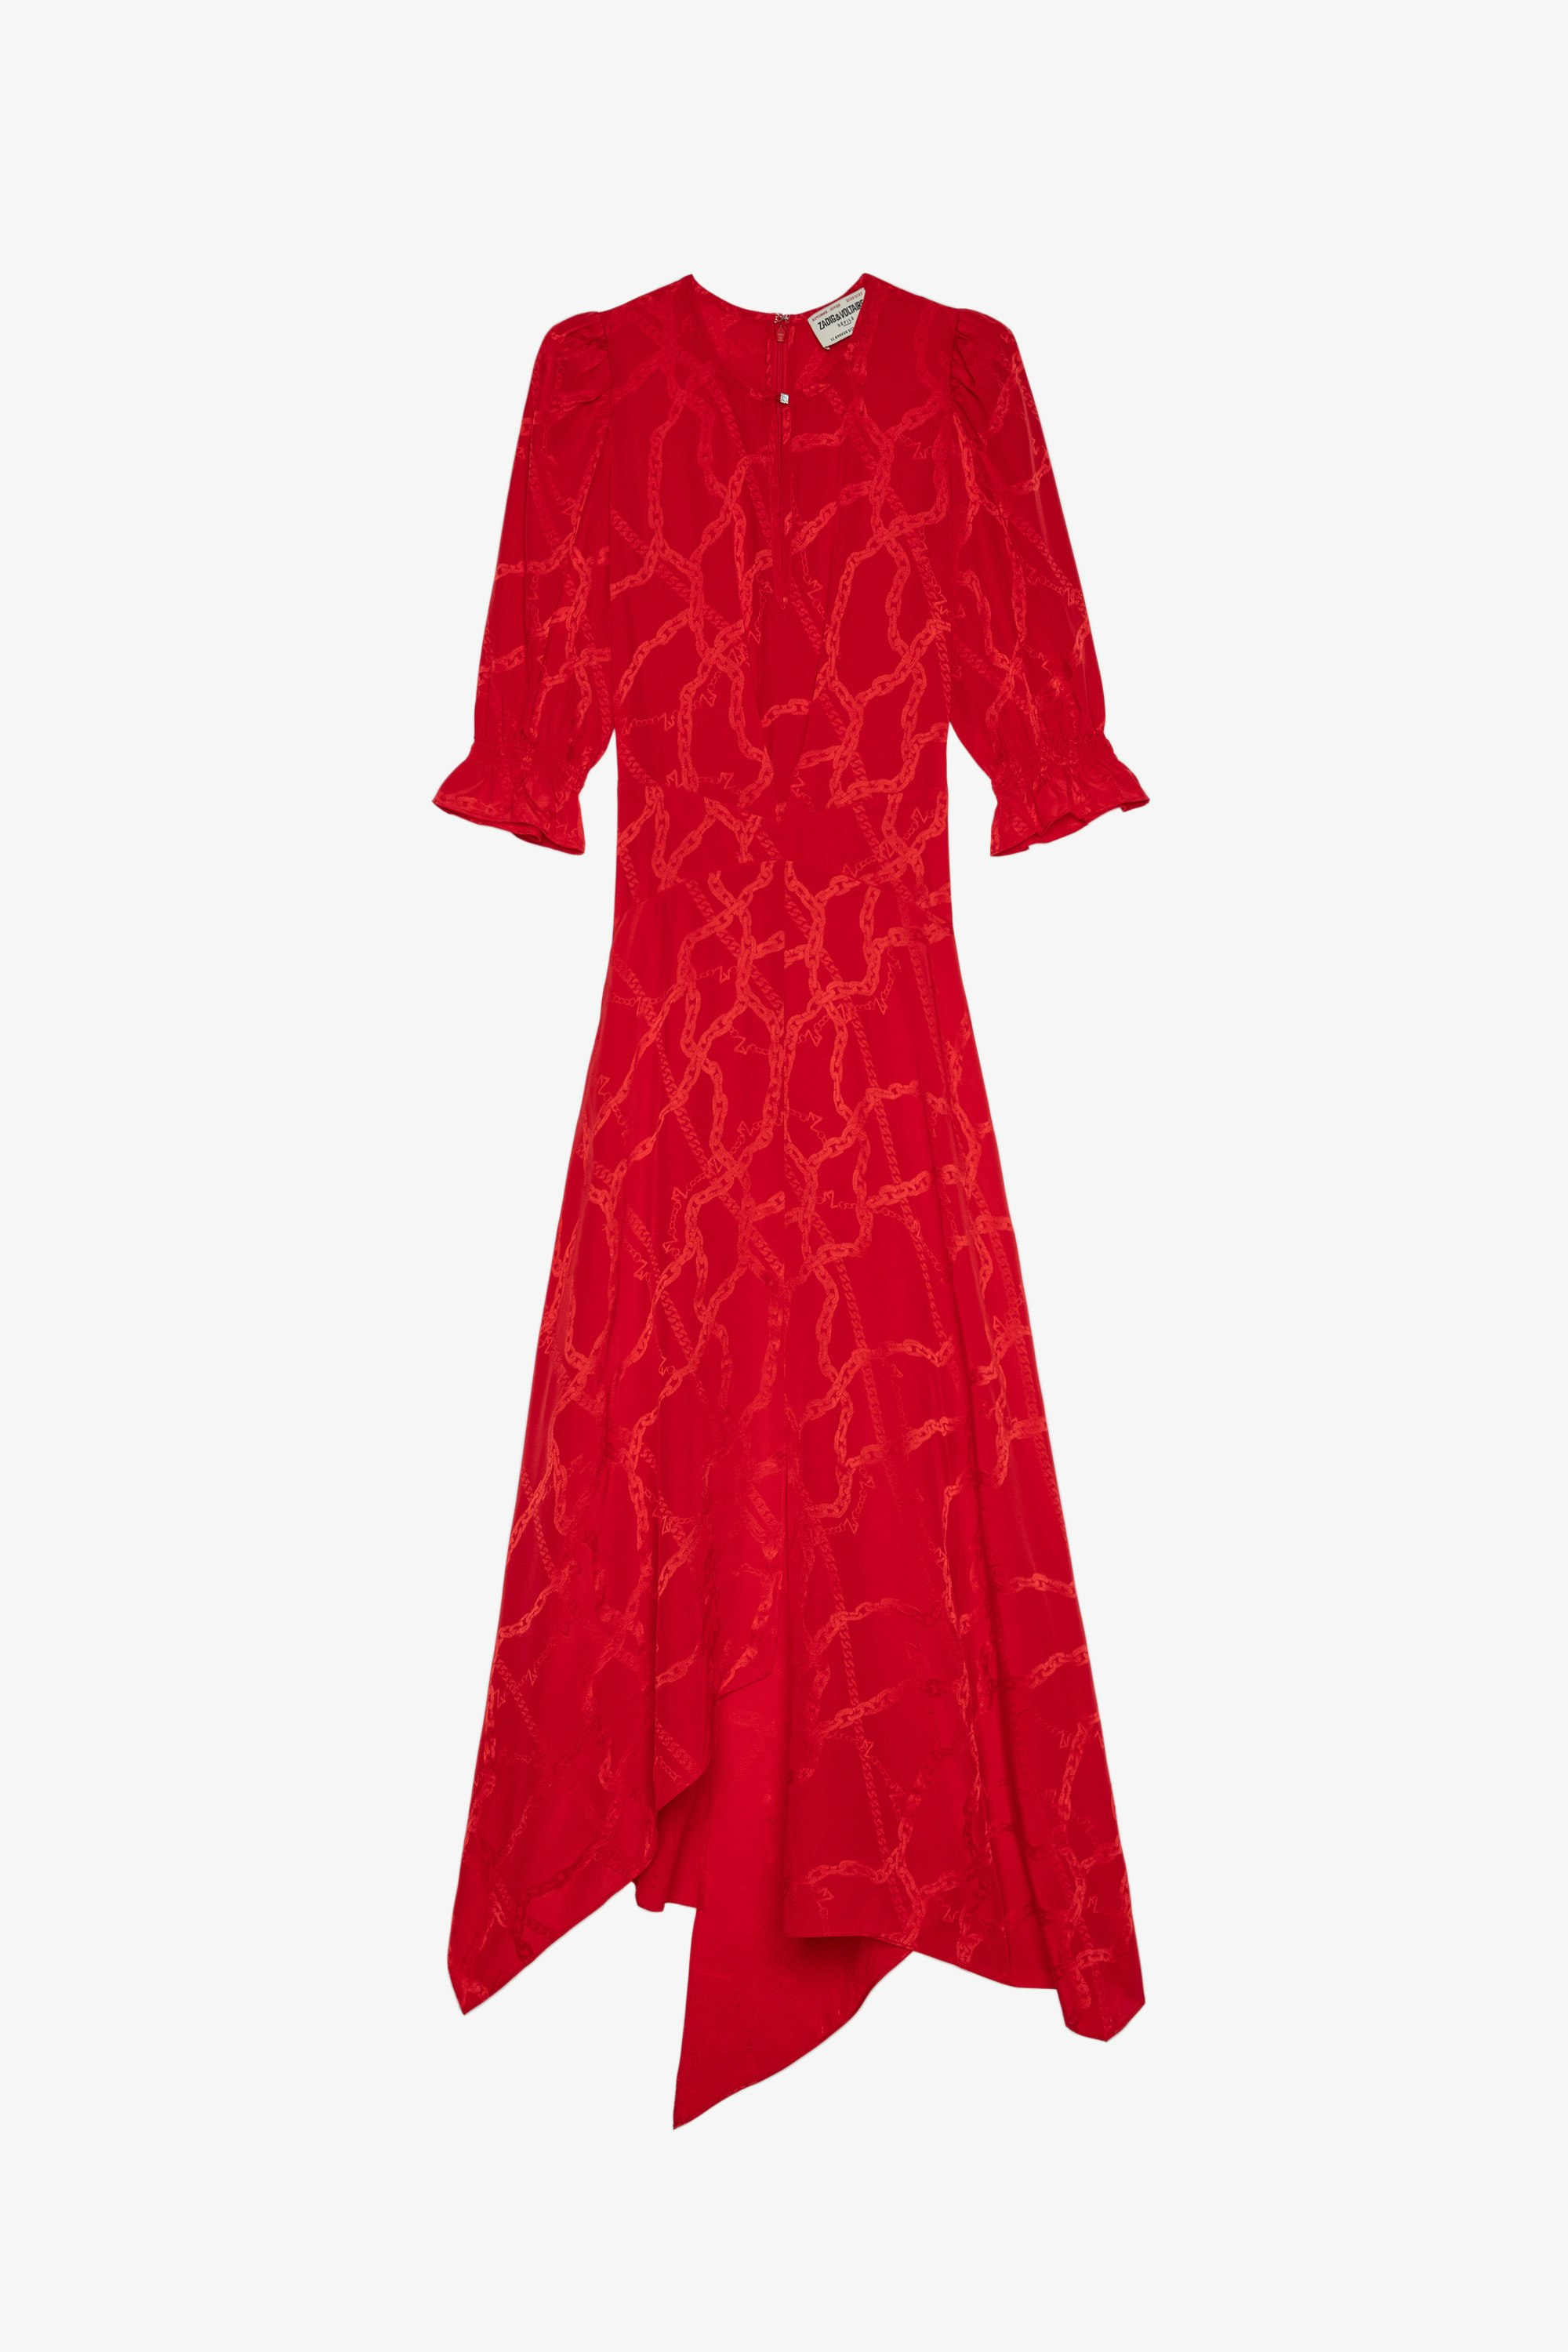 Robe Ranage Jac Soie Robe en soie orange jacquard drapée et ornée de motifs chaînes femme